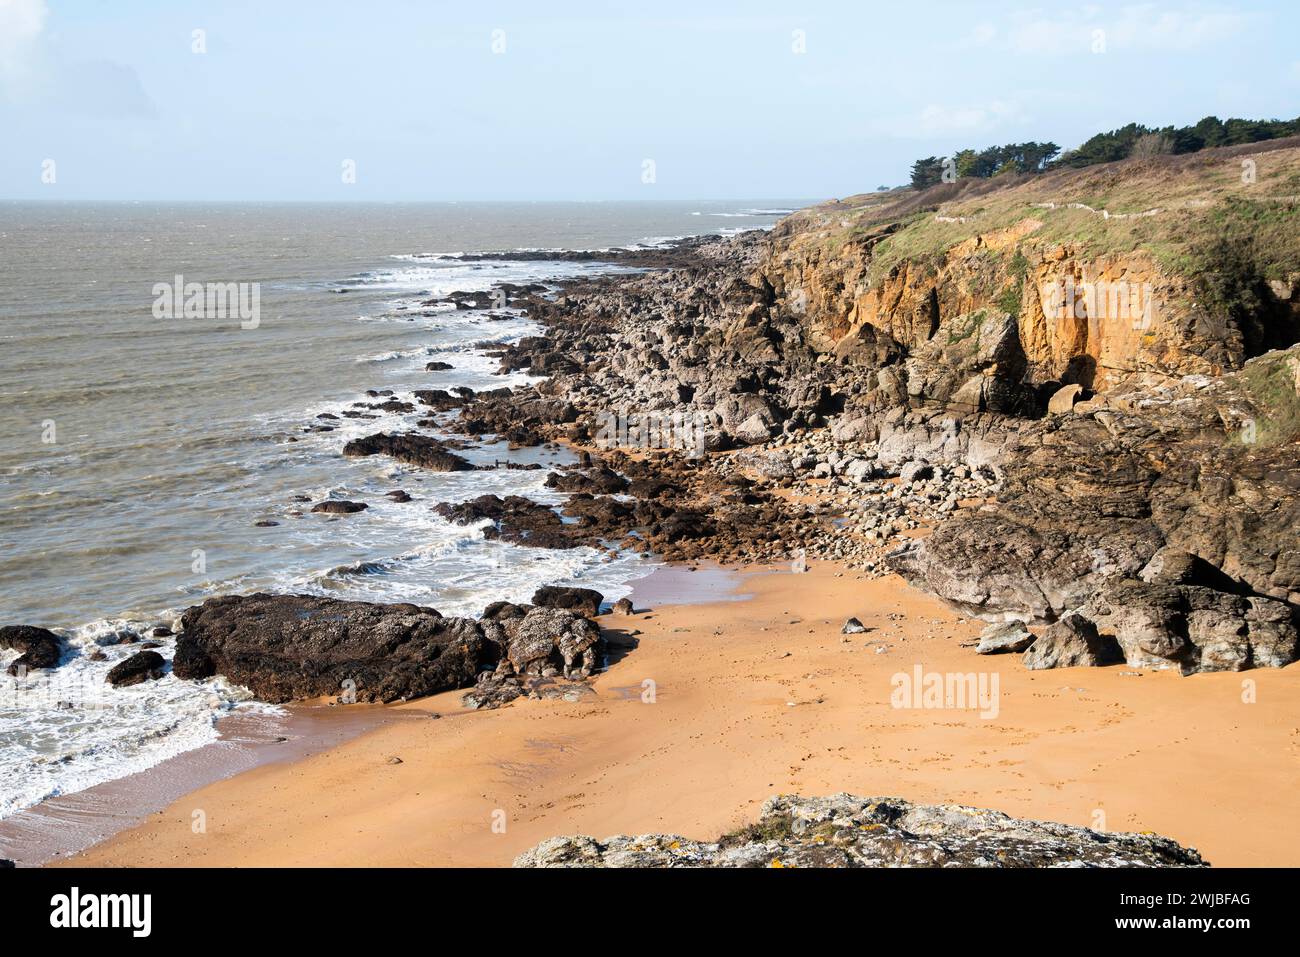 Beau paysage balnéaire d'un drone, côte de sable rocheux sur l'océan Atlantique en France. Banque D'Images